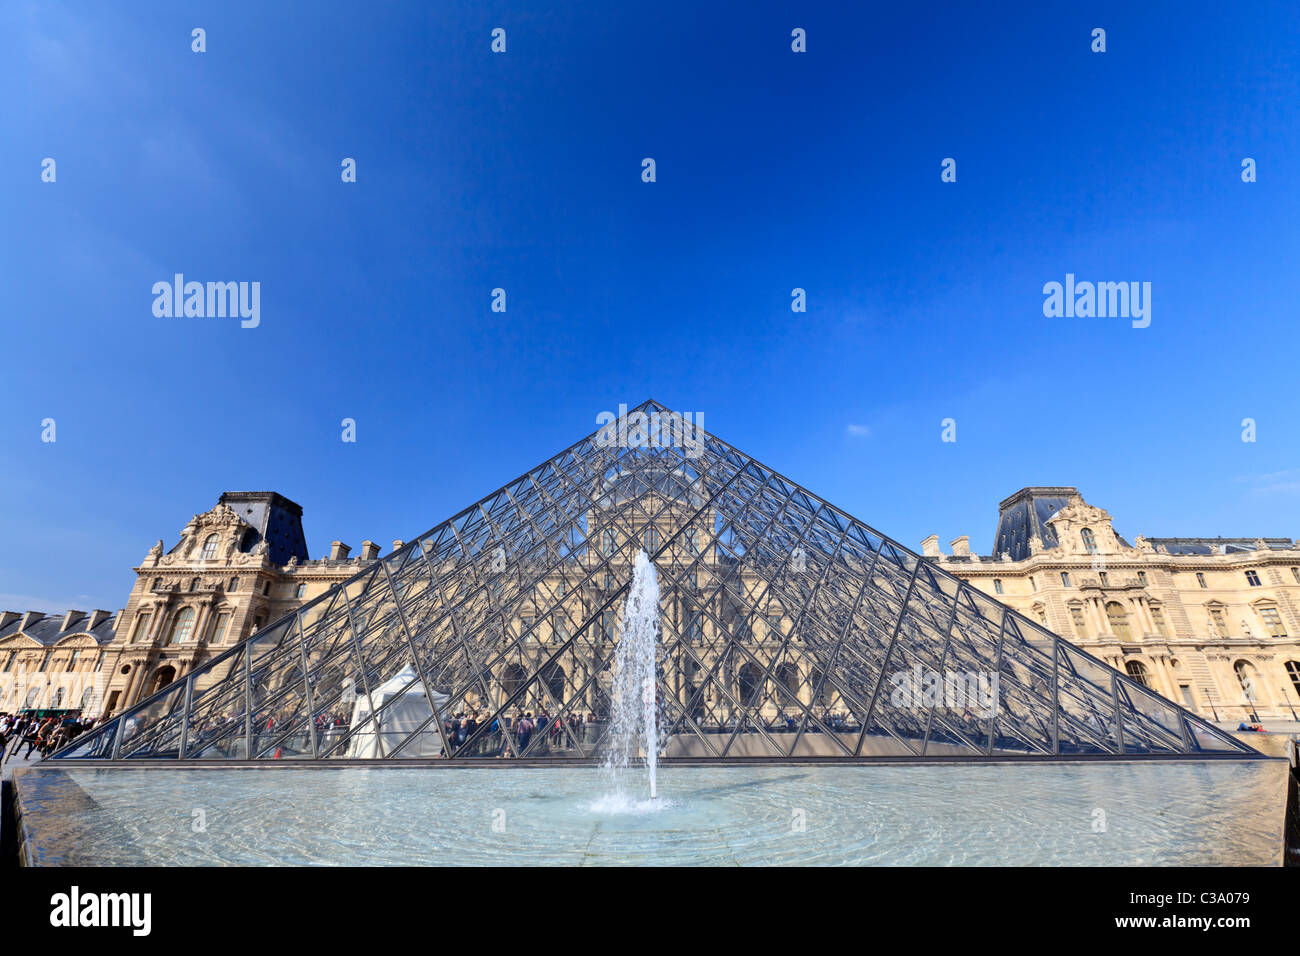 Le Musée du Louvre et de la pyramide de verre, Paris, France Banque D'Images